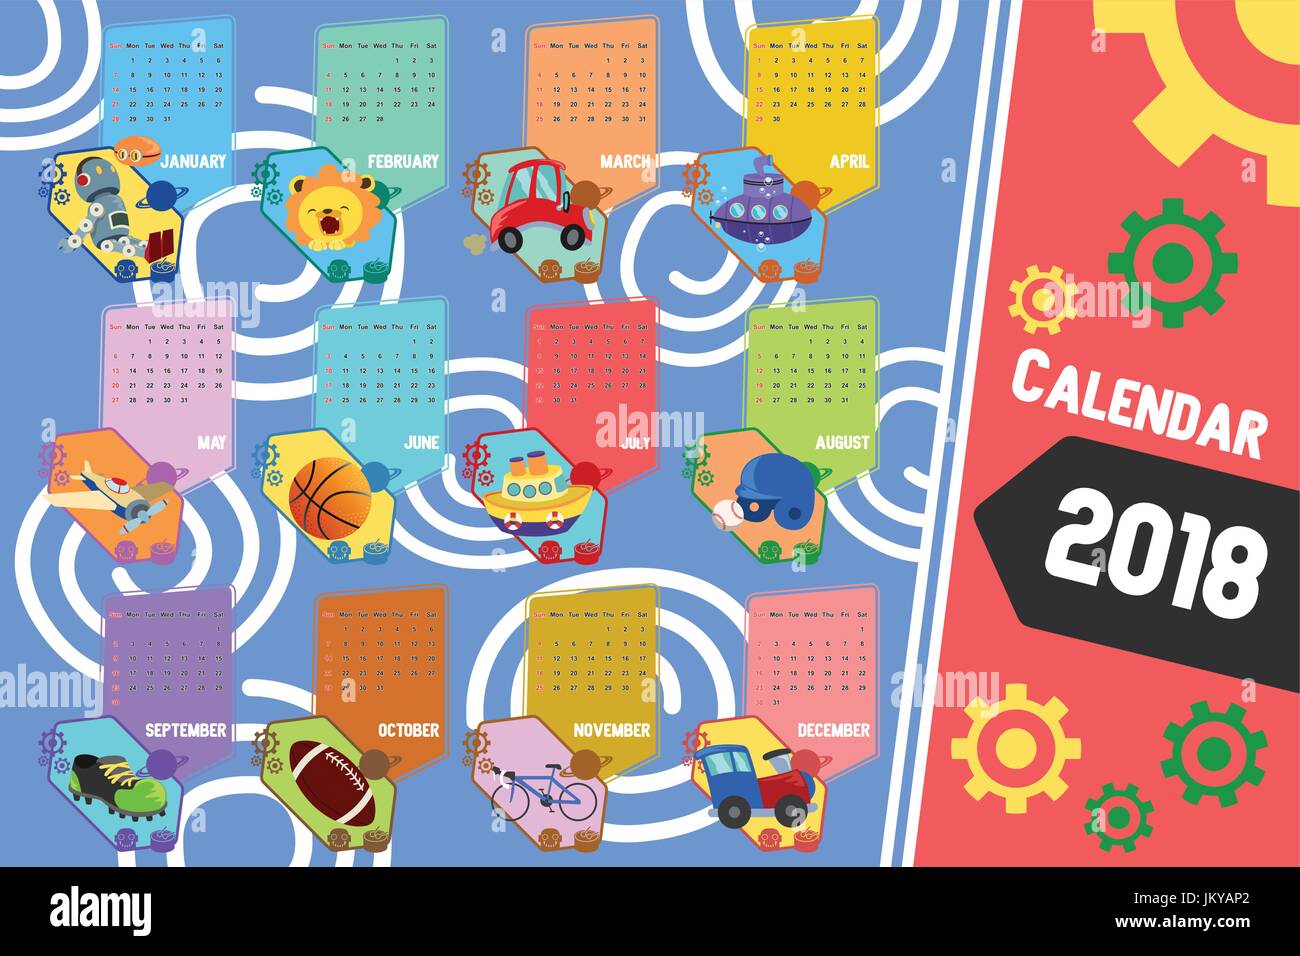 Eine Vektor-Illustration von 2018 Kalender im Cartoon-Stil Stock Vektor